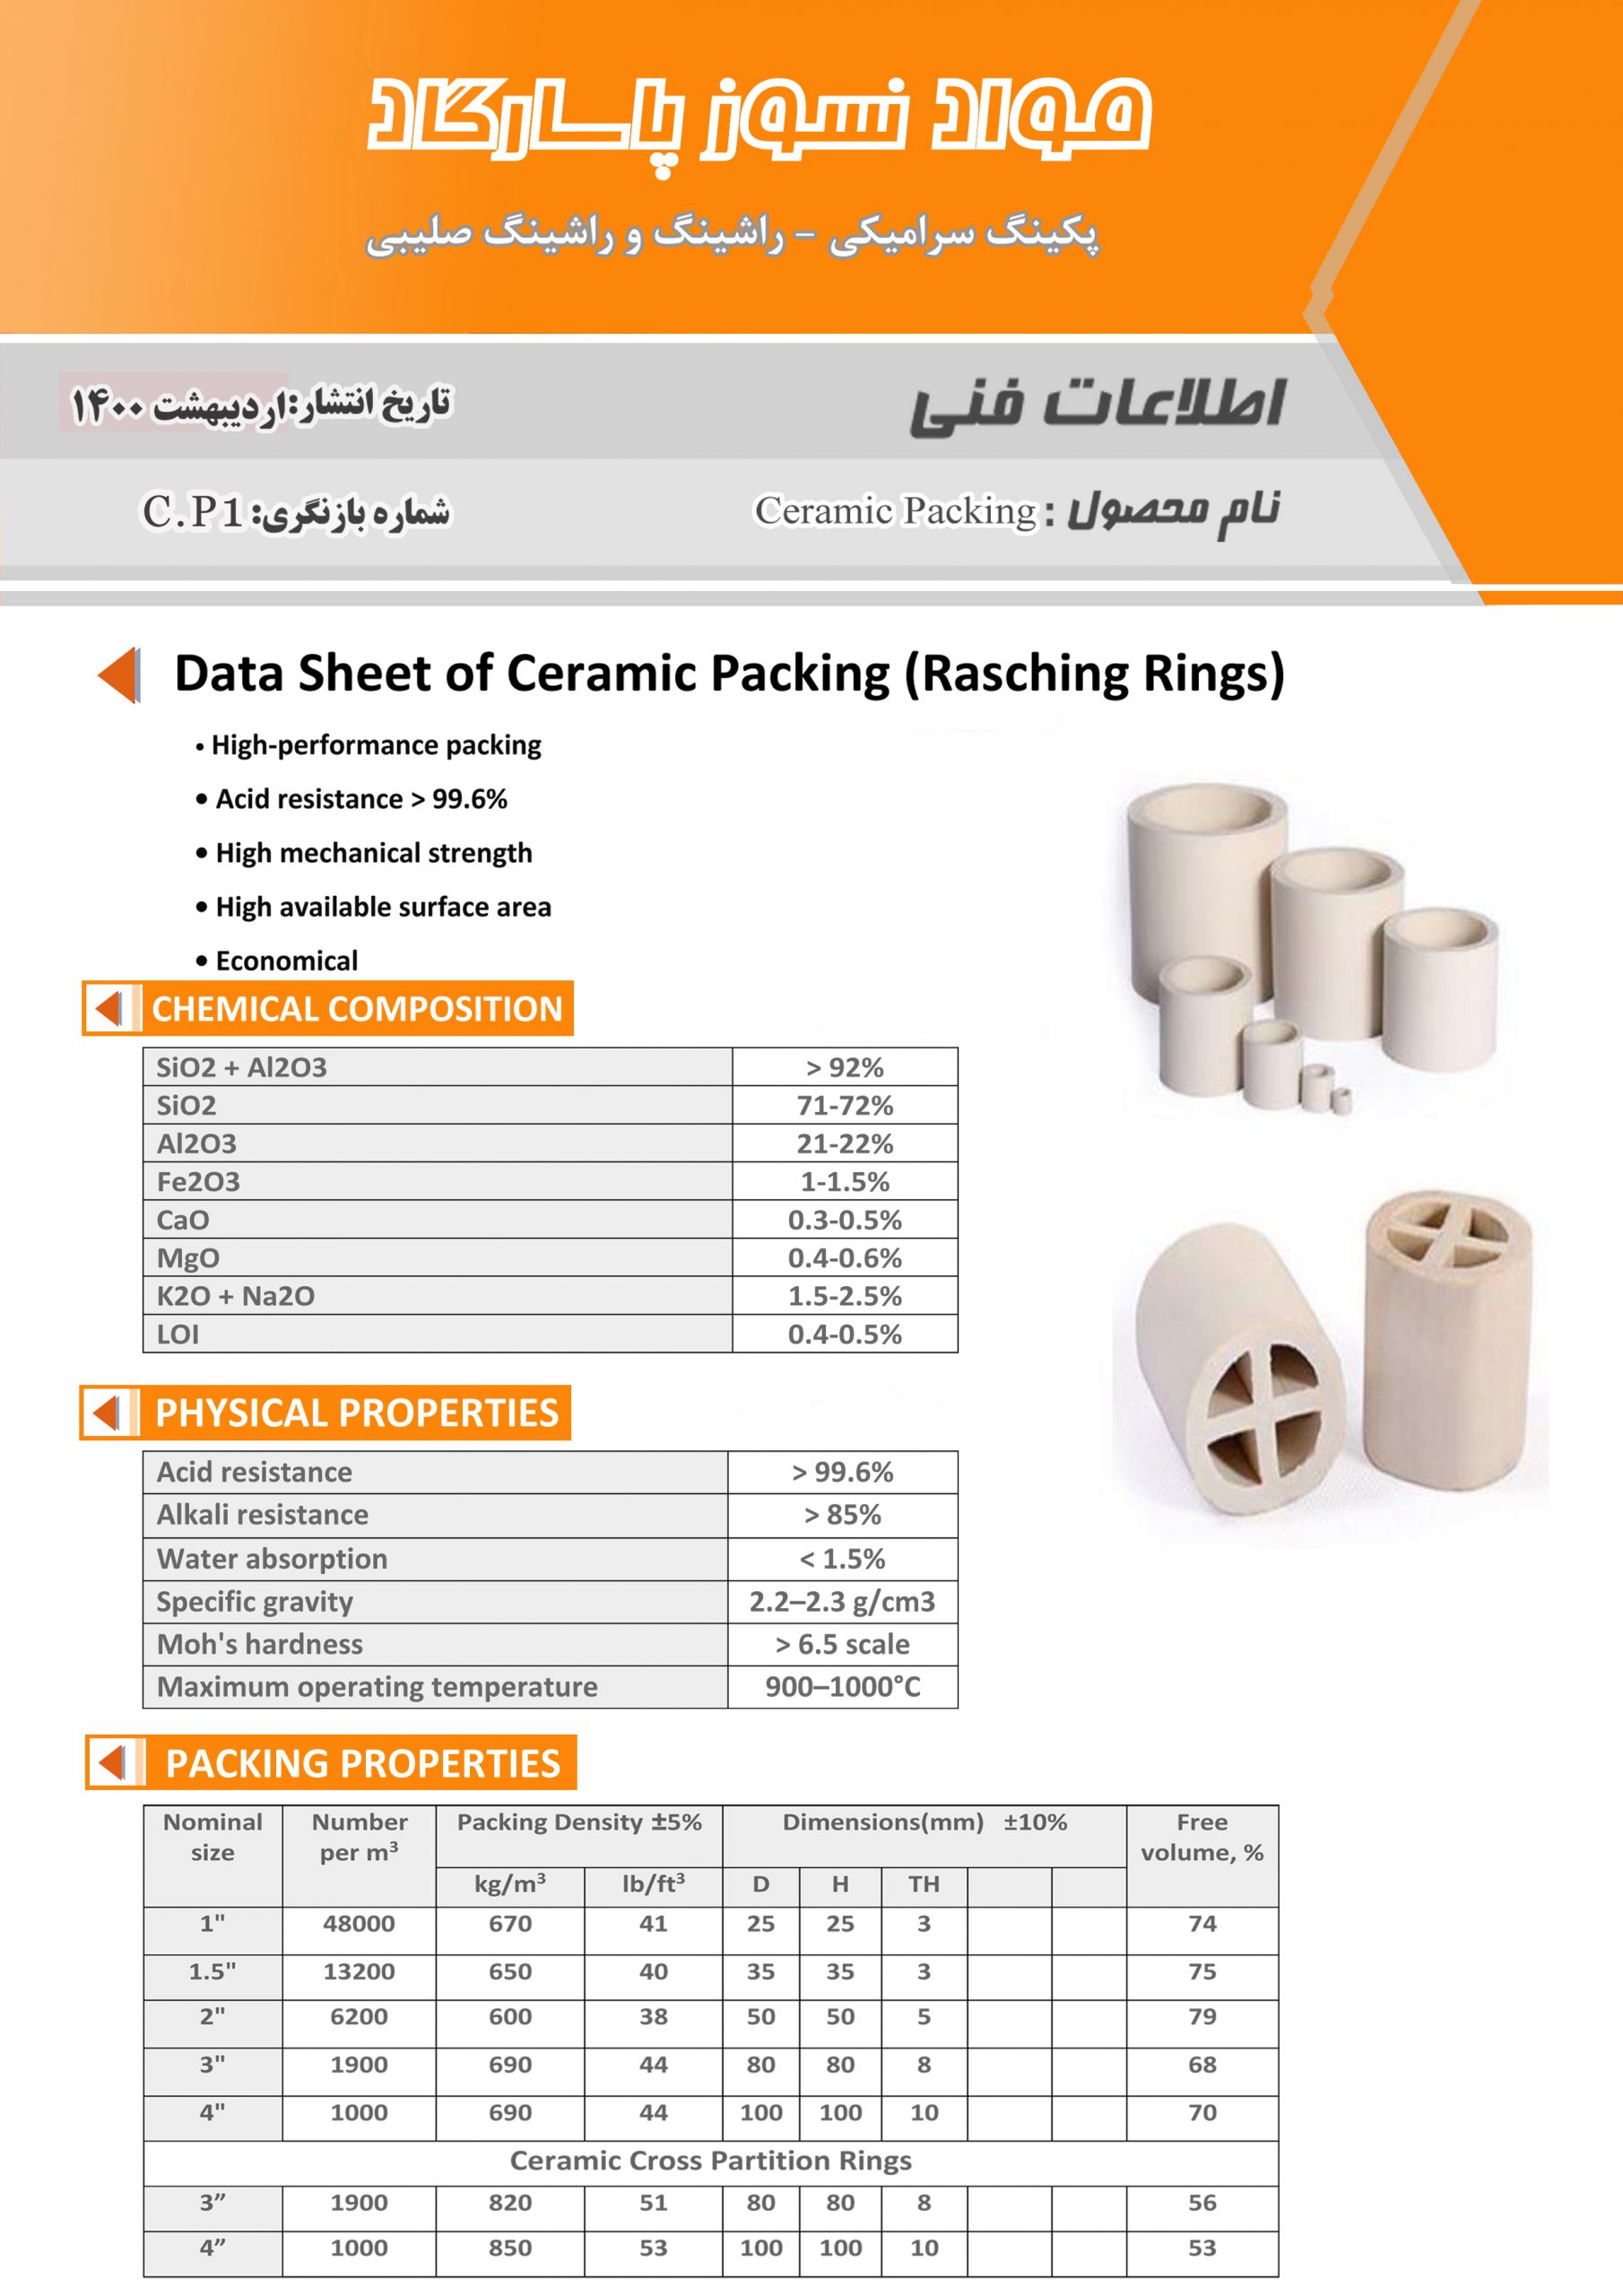 Ceramic packing - Rushing ring